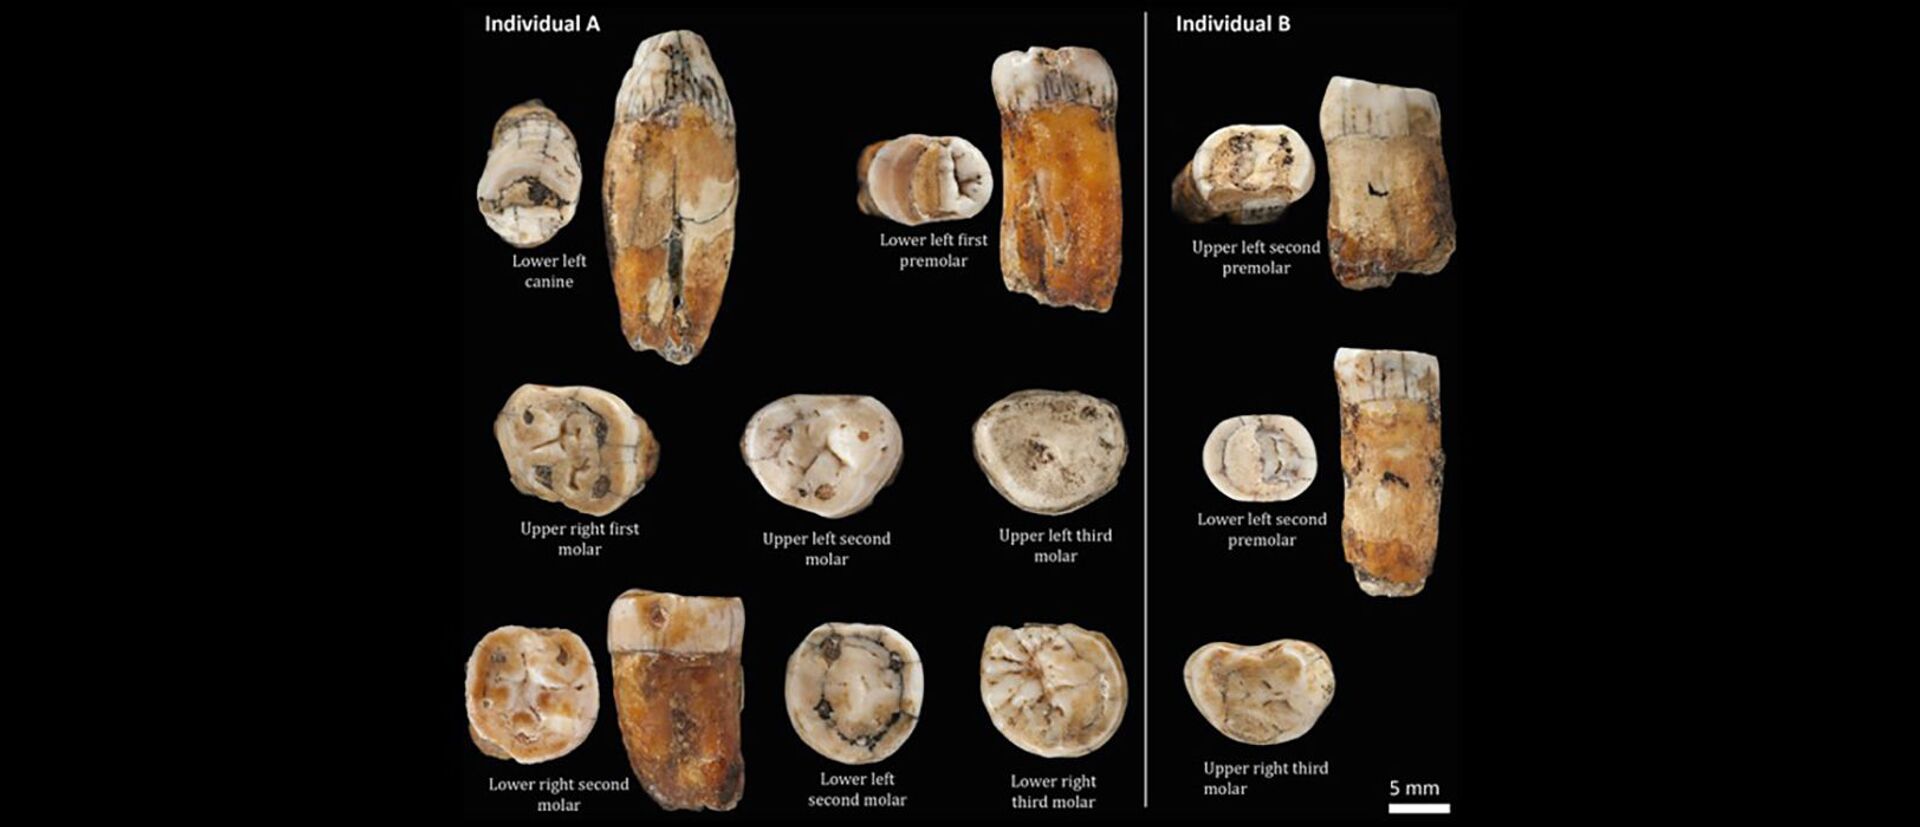 Dentes pré-históricos indicam sexo entre neandertais e Homo sapiens antes do que se pensava (FOTO) - Sputnik Brasil, 1920, 02.02.2021